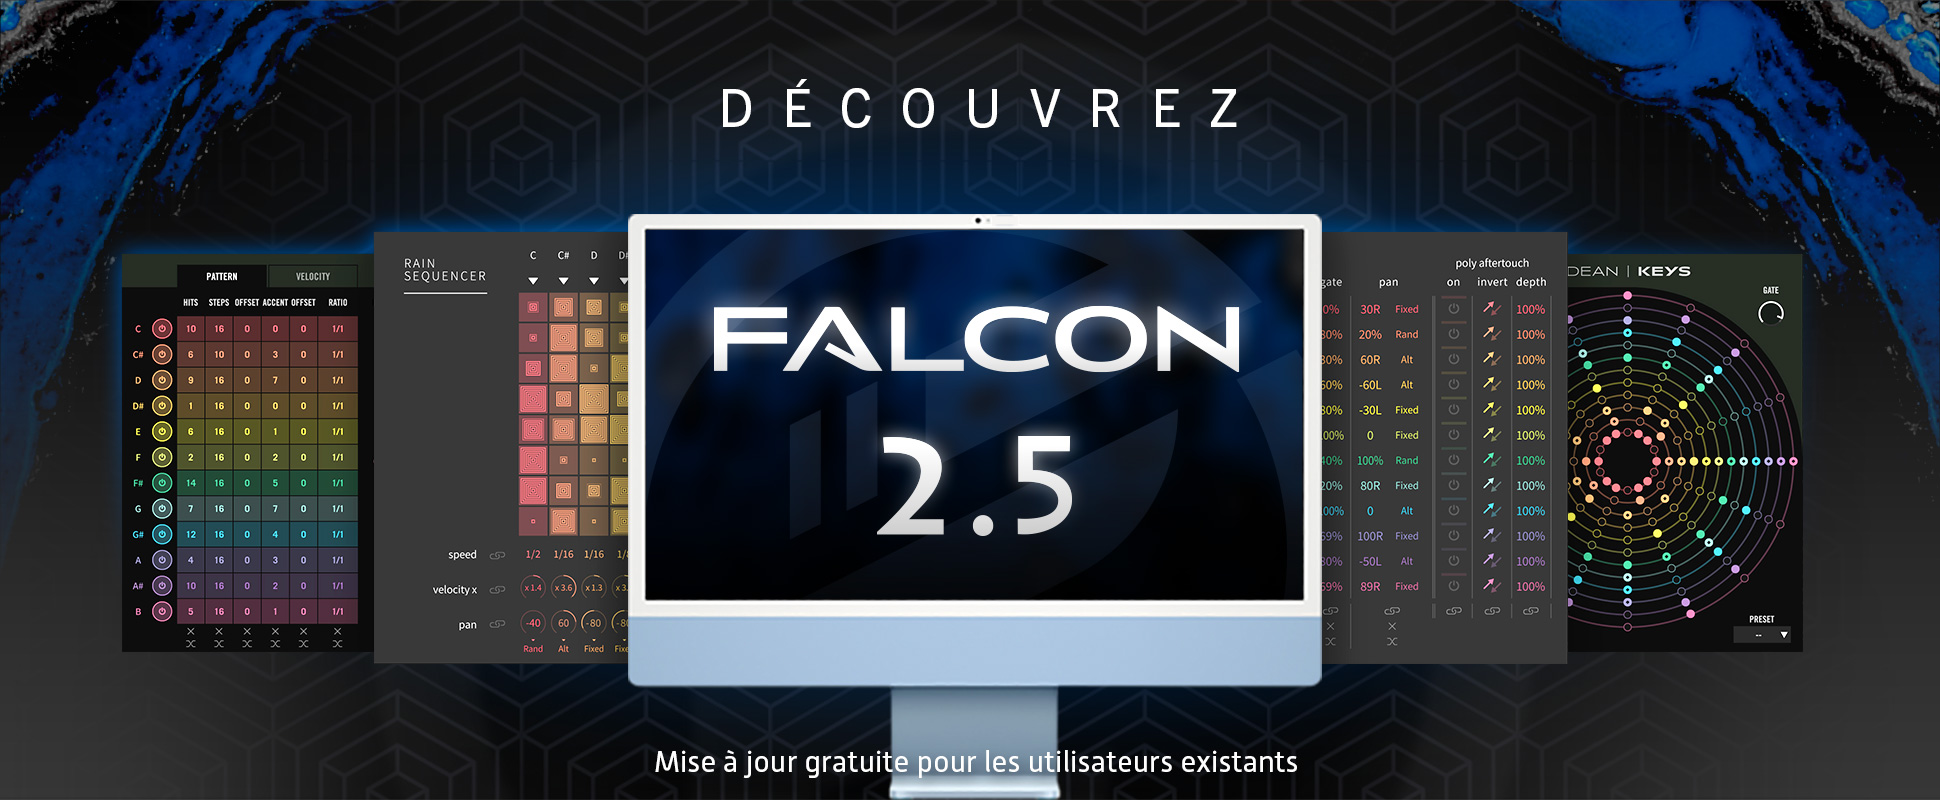 Falcon 2.5 - New